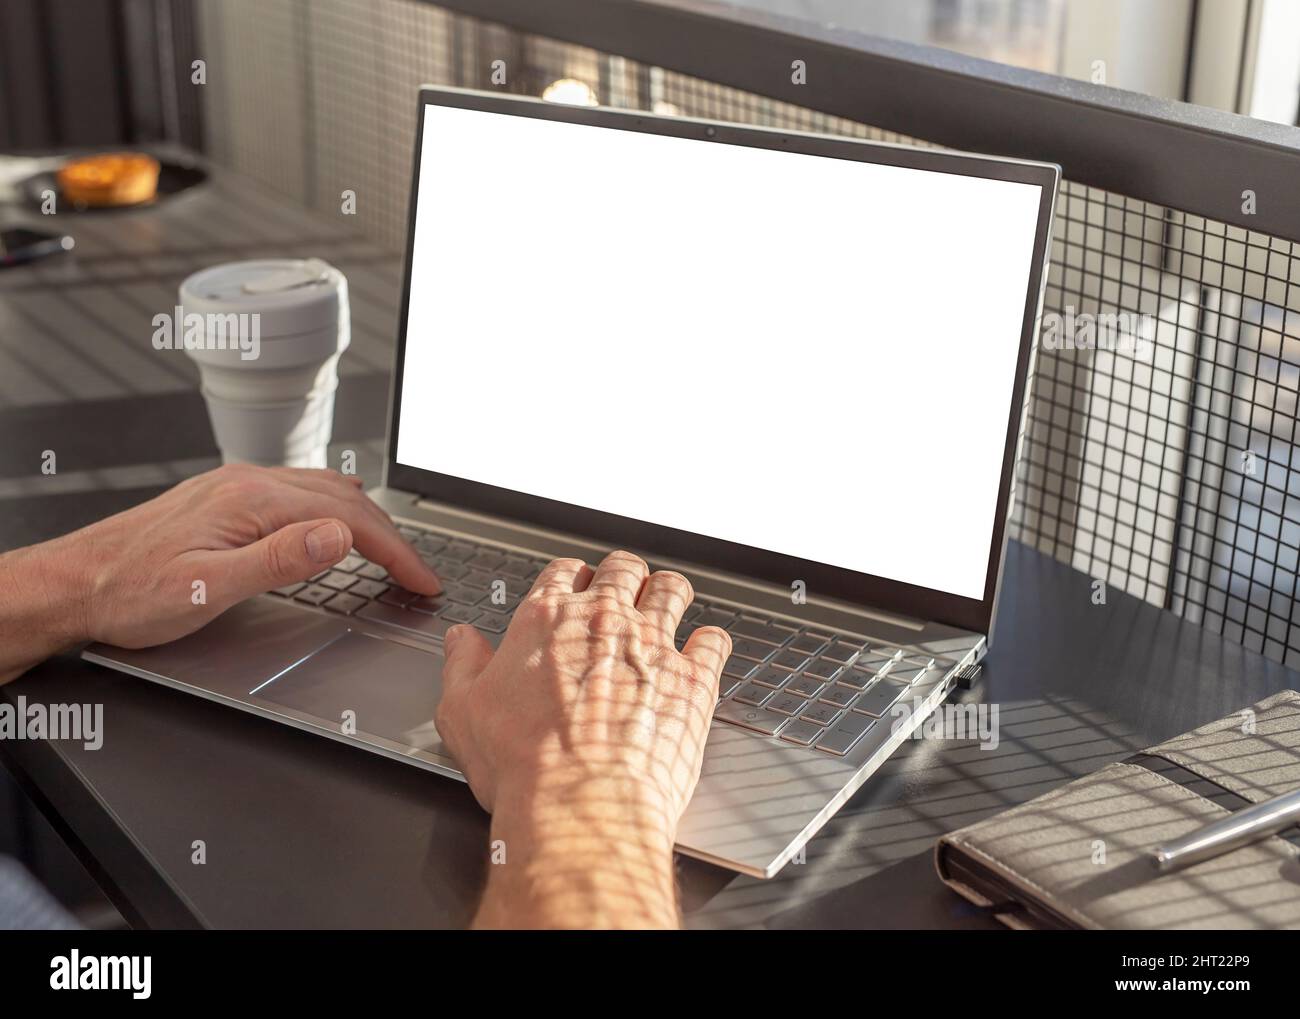 Laptop-Modell mit leerem Bildschirm. Frau Hände Nahaufnahme Tippen auf der Tastatur. Computer für Arbeit, Fernbildung, Informationssuche, soziale Kommunikation. Hochwertige Fotos Stockfoto